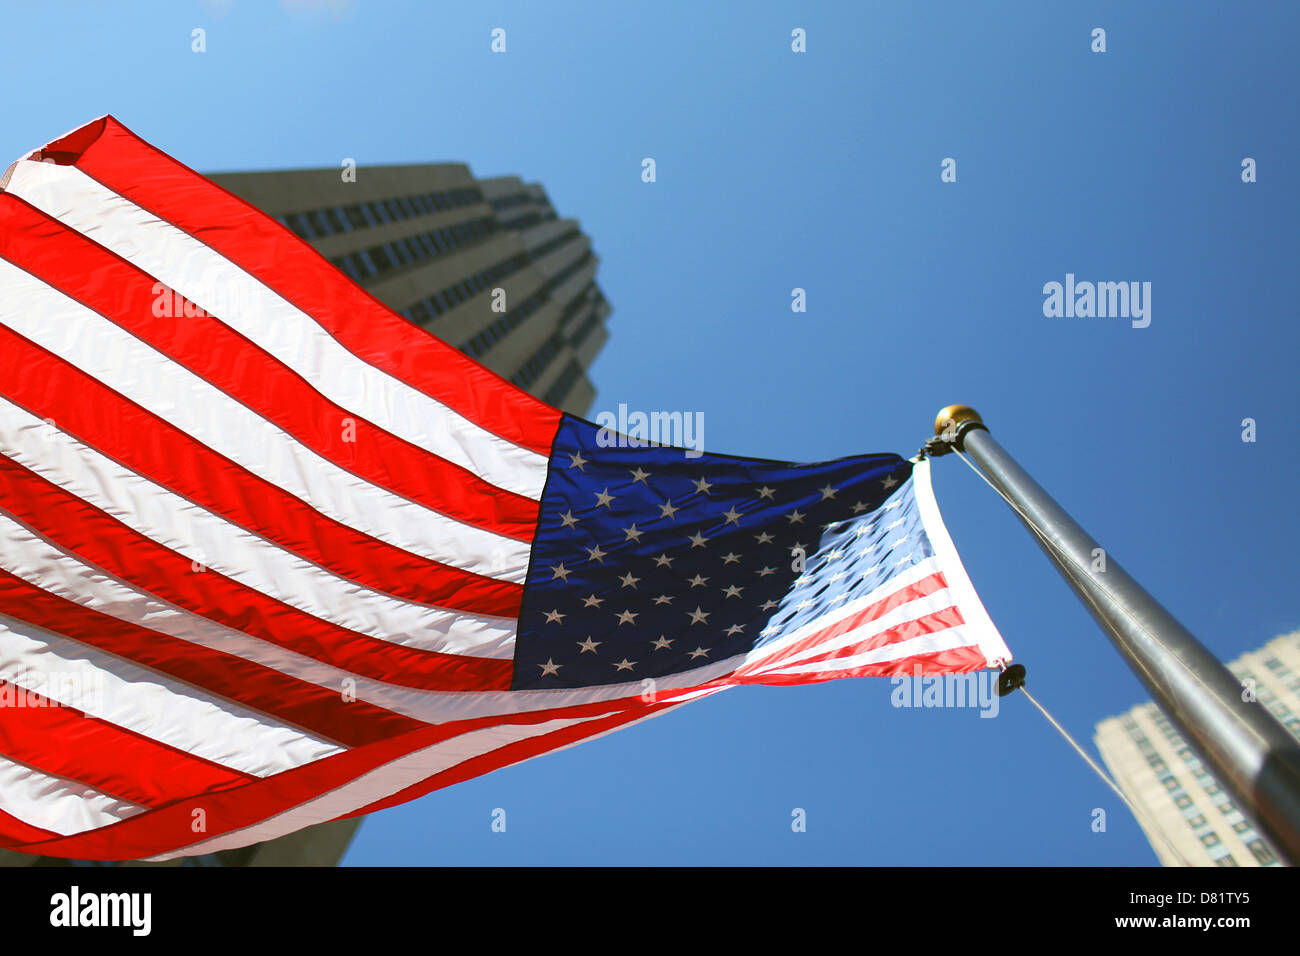 Star spangled banner flag Rockefeller building Stock Photo